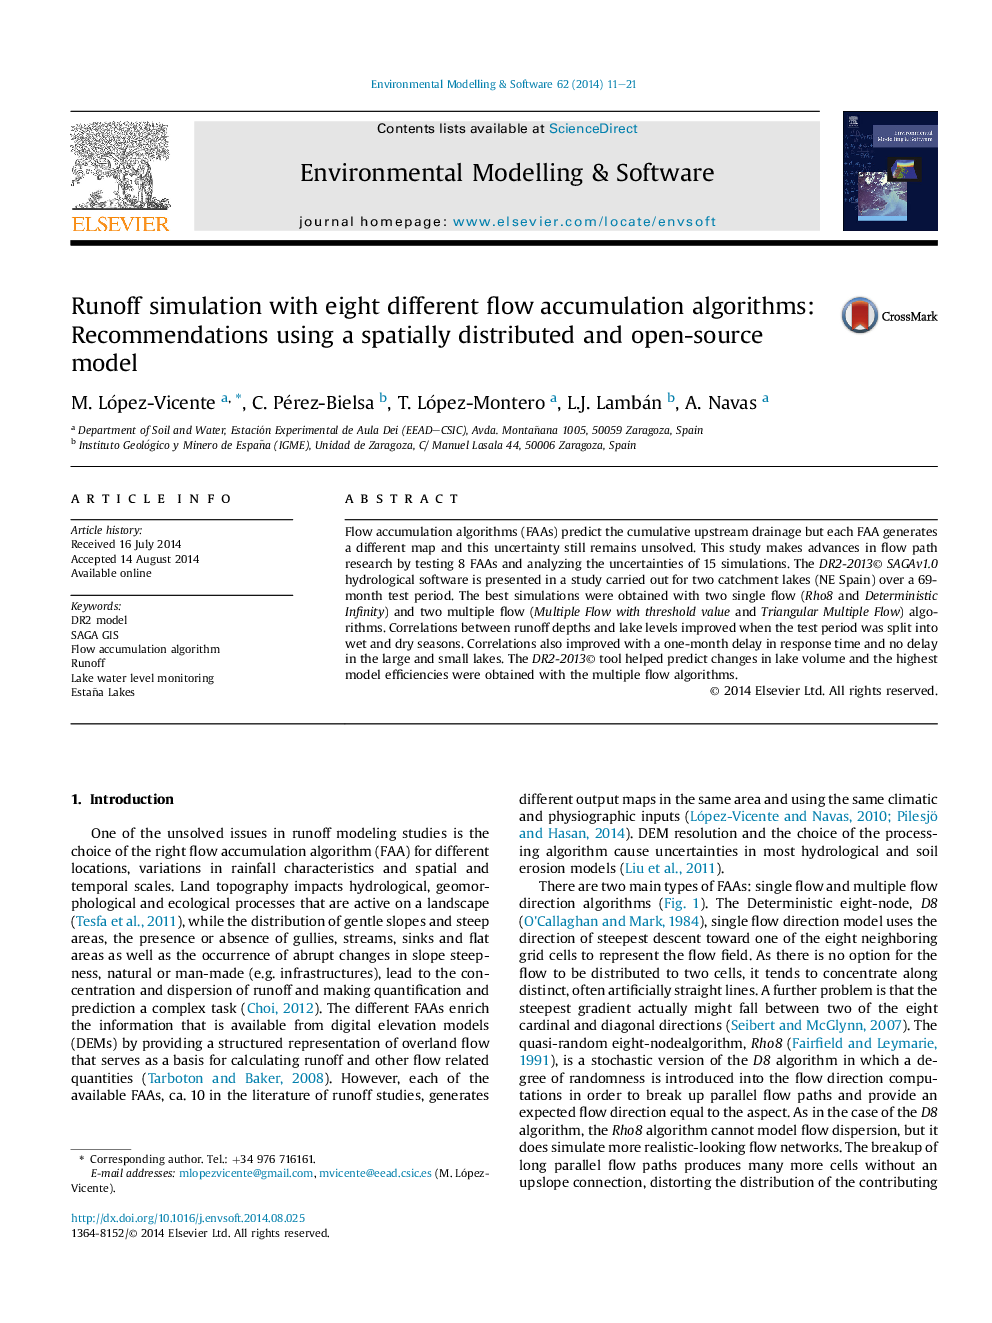 شبیه سازی رواناب با هشت الگوریتم مختلف تجمع جریان: توصیه هایی با استفاده از یک مدل فضایی توزیع شده و منبع باز 